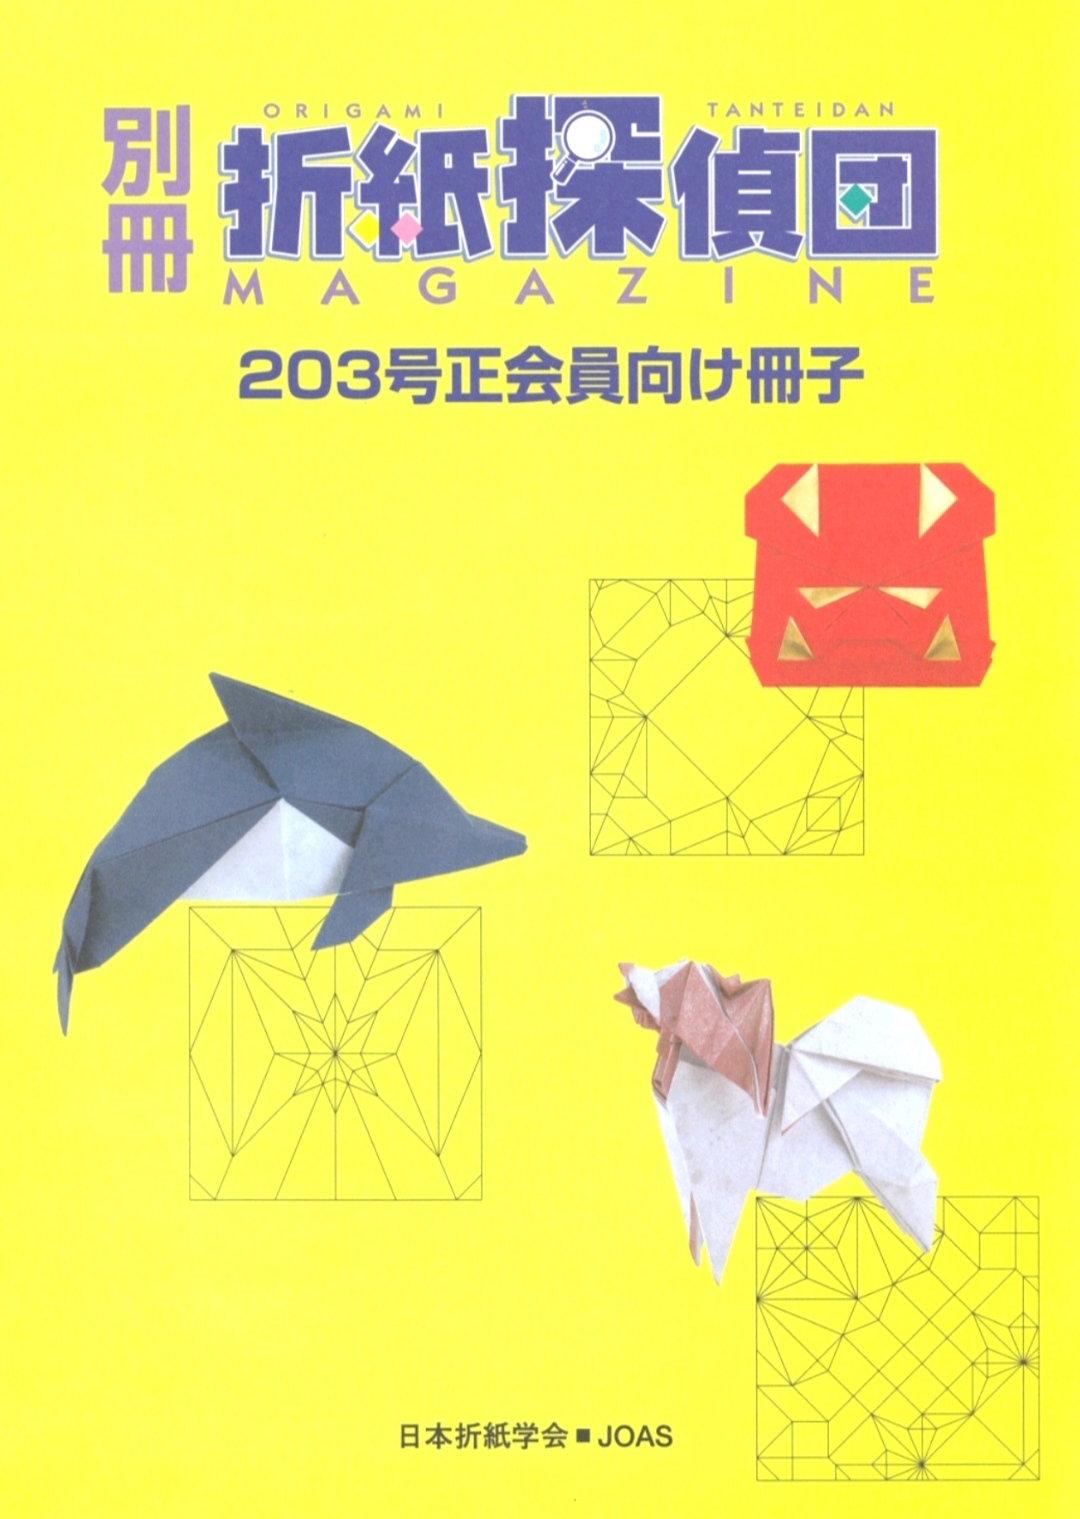 Origami Tanteidan Magazine 203 extra : page 9.